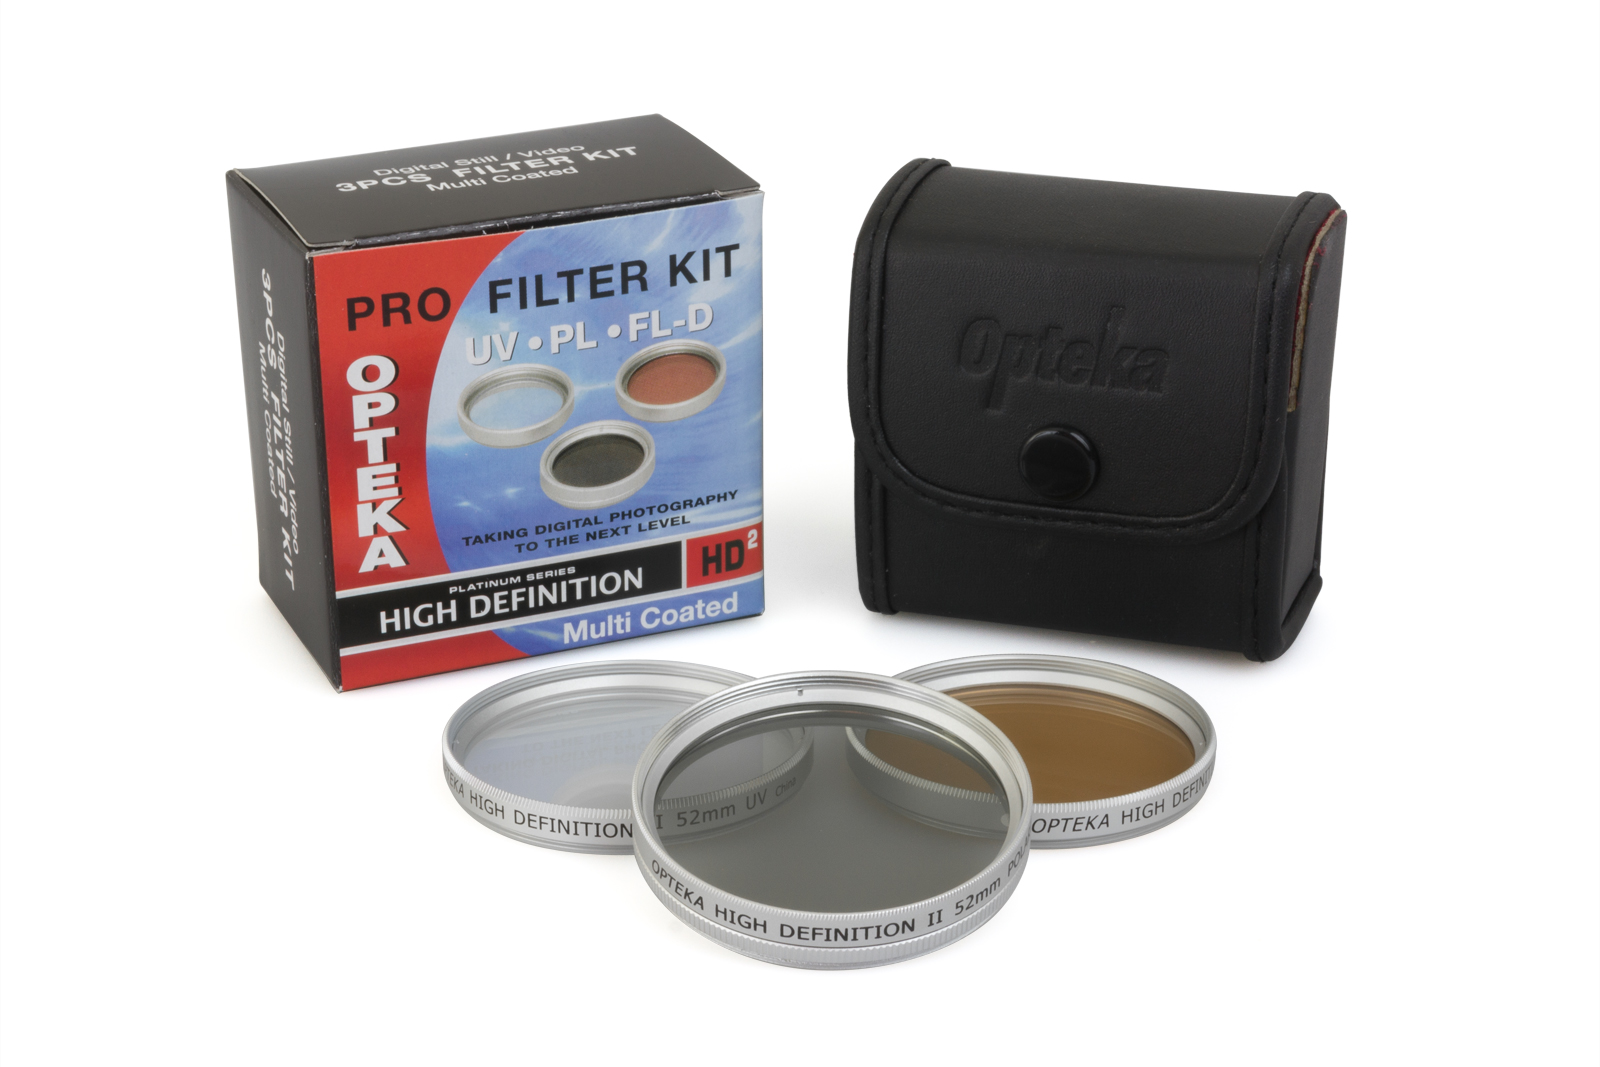 Opteka HDA 3 Piece (UV, PL, FL) Filter Kit for JVC GR-D796, GR-D770, GR-D750, GR-DA30, & GR-DA30US Digital Camcorders - image 1 of 9